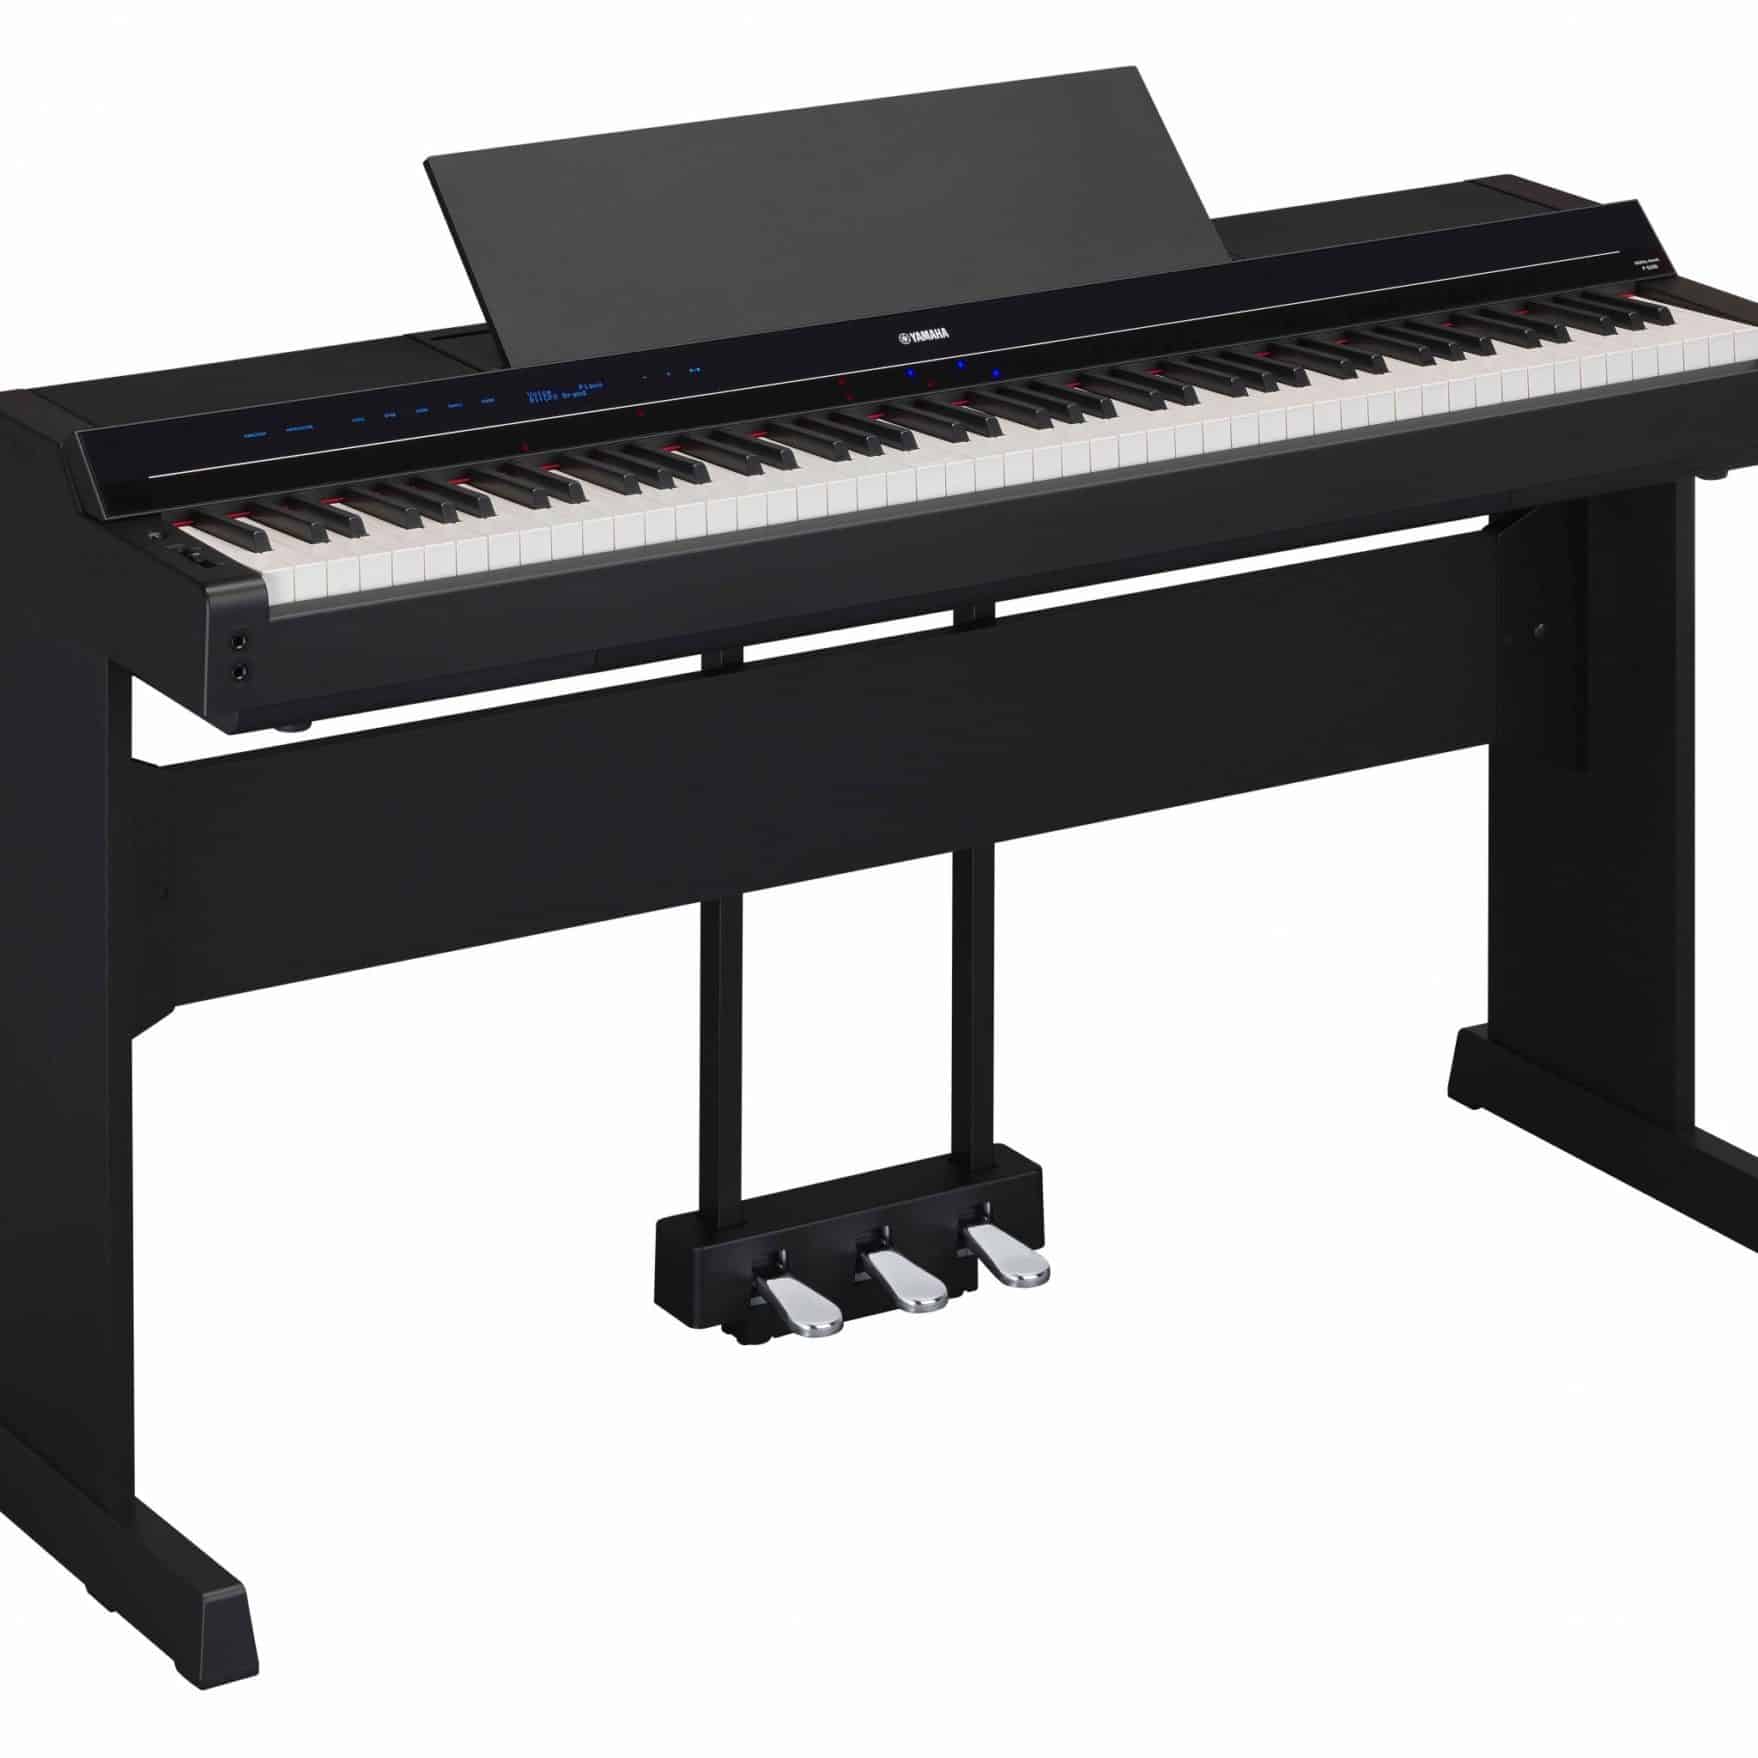 Quel est le meilleur stand pour un clavier, un piano ou un synthé